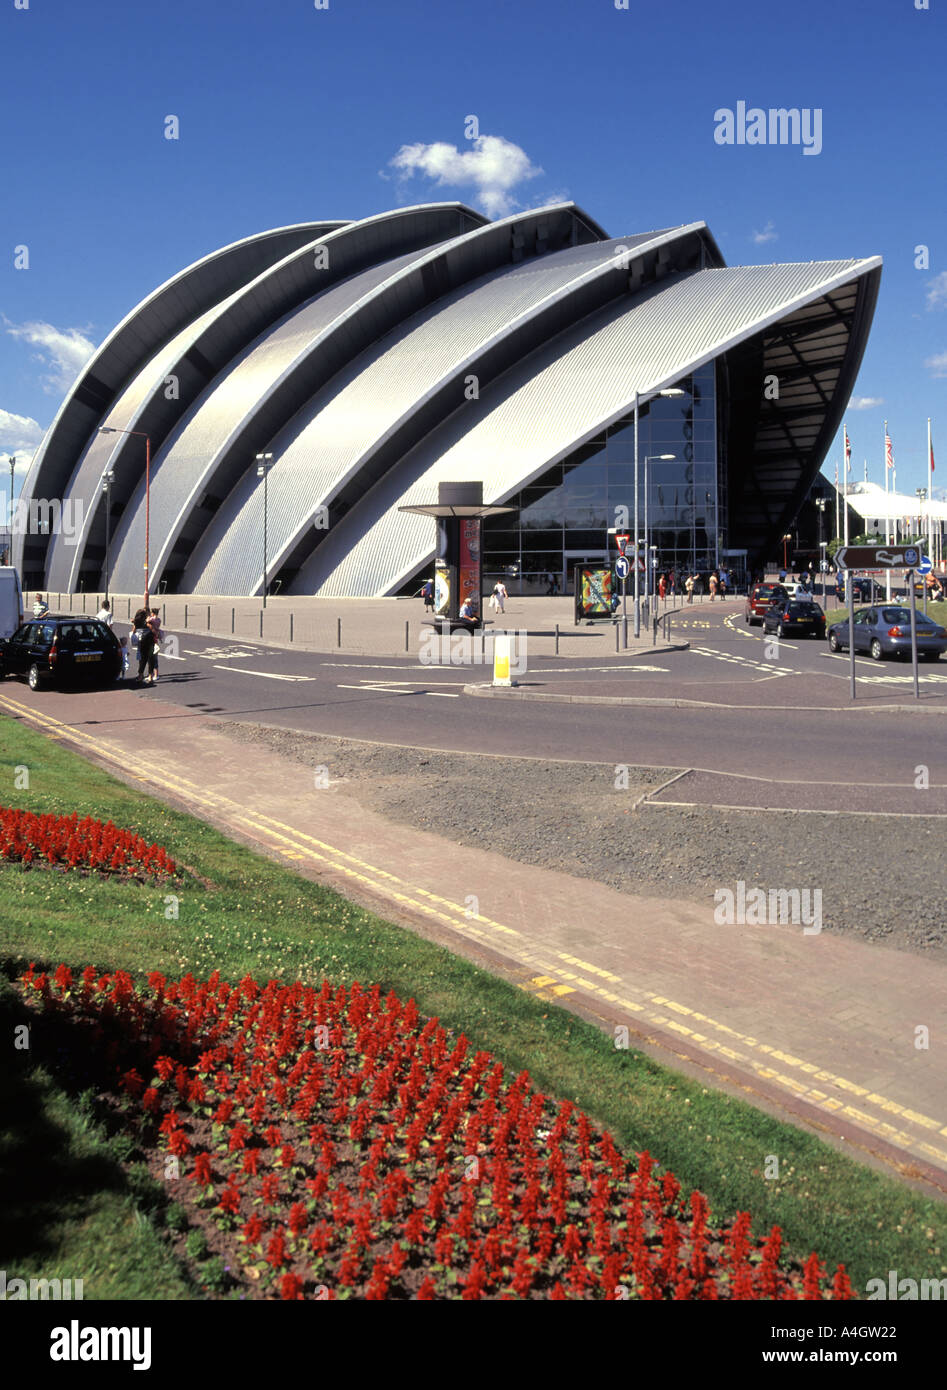 Besucherwagen im Scottish Exhibition Conference Center oder SEC Armadillo oder Clyde Auditorium, einem ikonischen Konzertsaal auf Clydeside in Glasgow, Schottland, Großbritannien Stockfoto